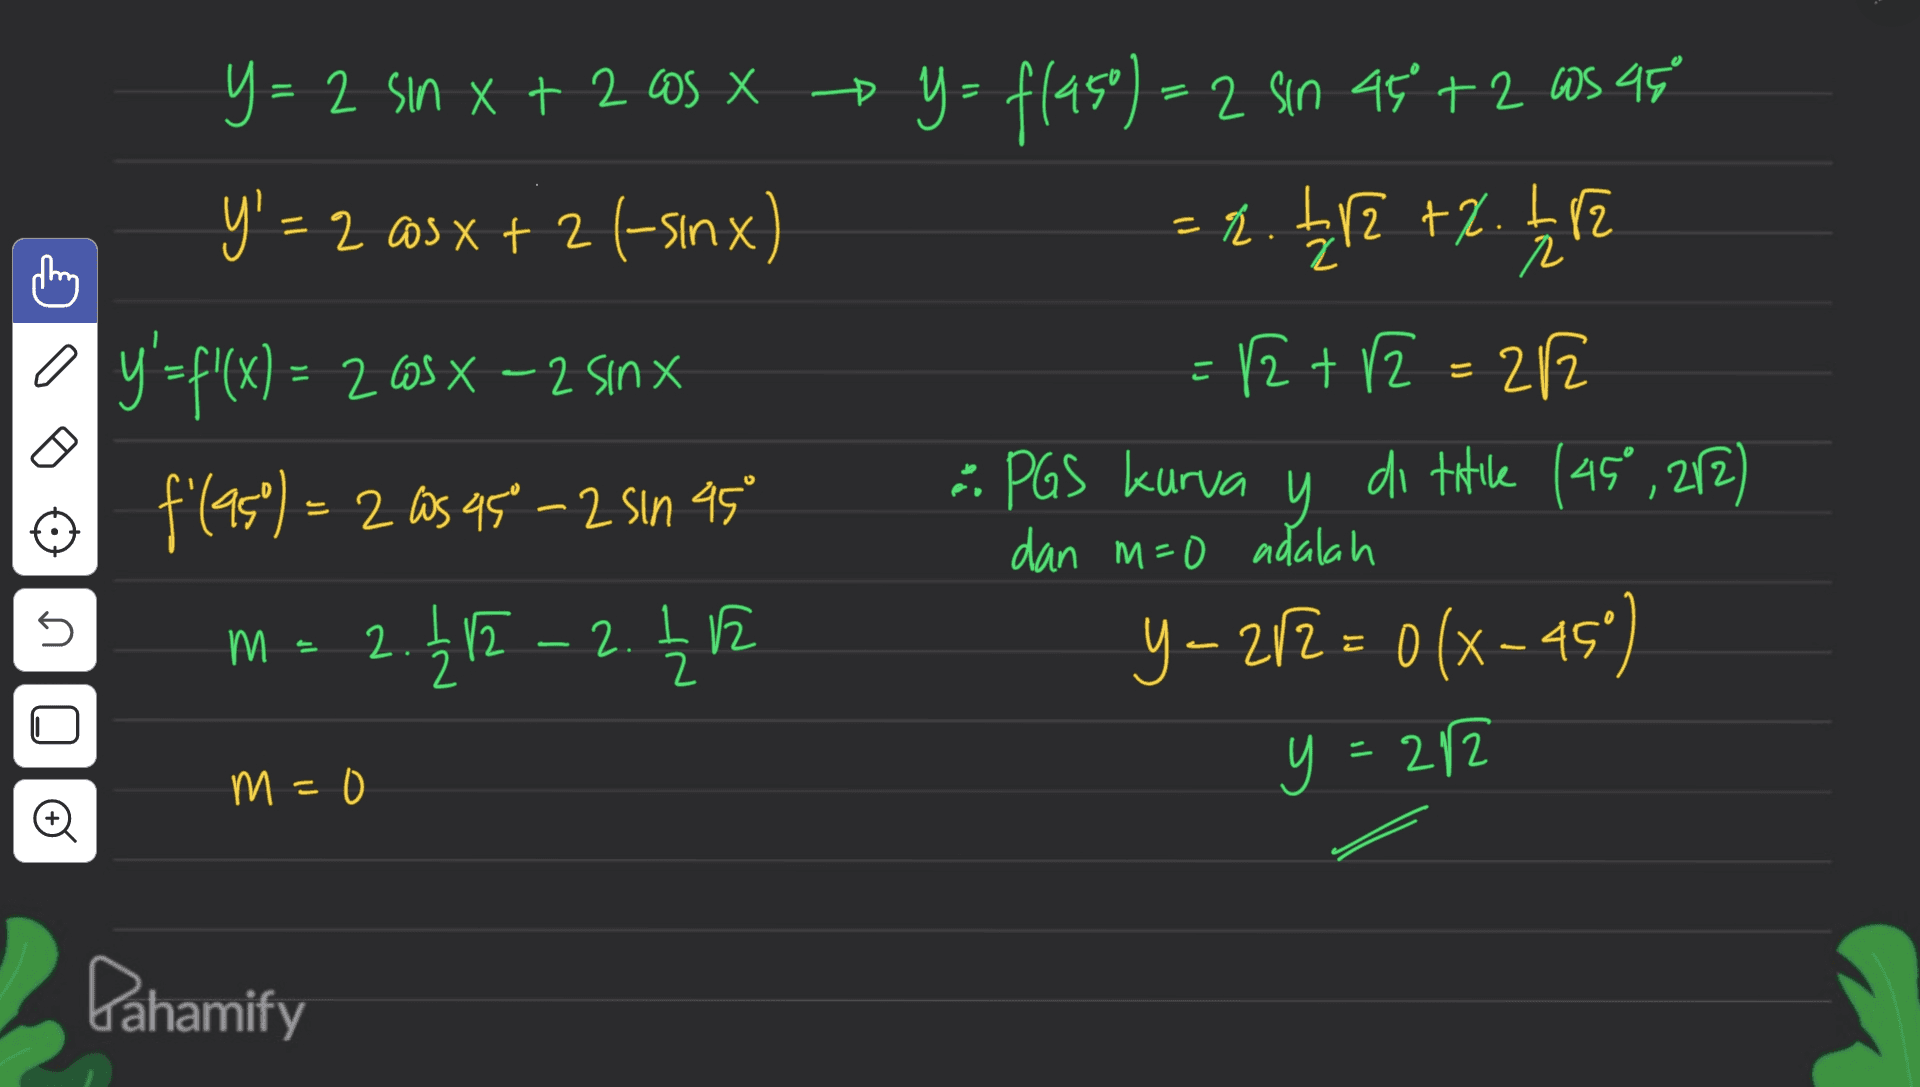 + = thing r a こ y= 2 sin x + 2 cos x y = f(450) = 2 sin at +2 as 95 x 45 y' = 2 @s x + 2 (-sinx) = 2.212 +2. 112 y'=f(x) = 265 X – 2 sinx 12+2 = 212 12 f'(as)= 2 as 95 -2 sin 45 - PGS kurva y di titile (45°,272) m = 2.212 ~ 2. 2 h y-2/2 = 0 (x -45°) dan m=0 adalah 5 (М 1 2 E - y = 282 m = 0 o Dahamify 